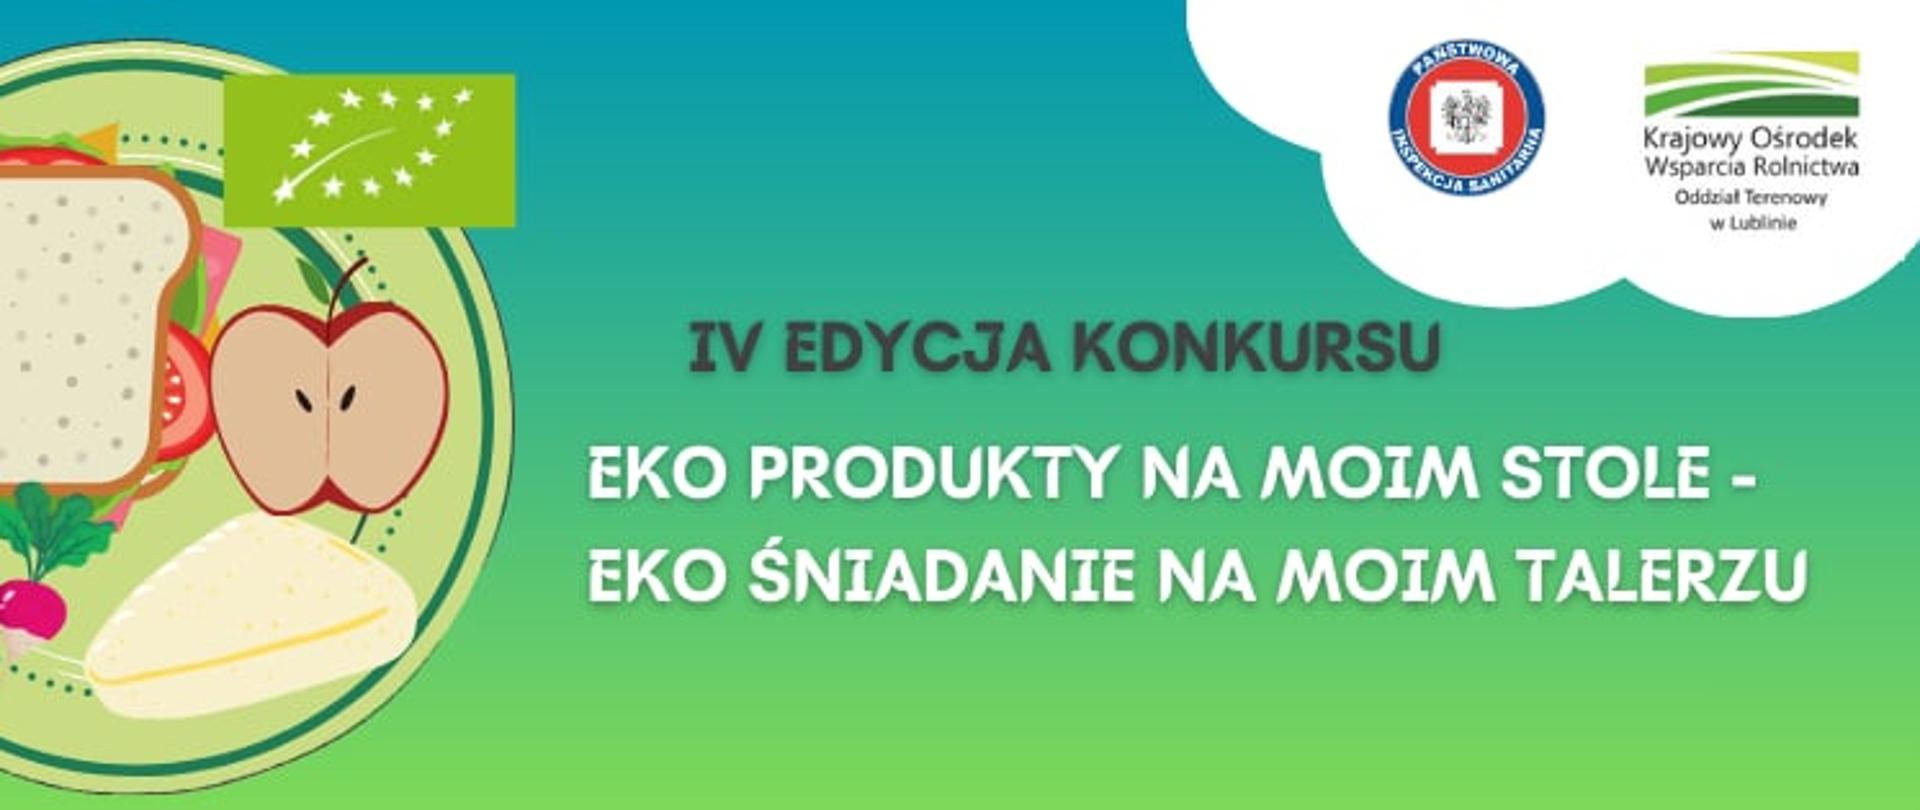 IV Edycja konkursu "EKO PRODUKTY NA MOIM STOLE-EKO ŚNIADANIE NA MOIM TALERZU".